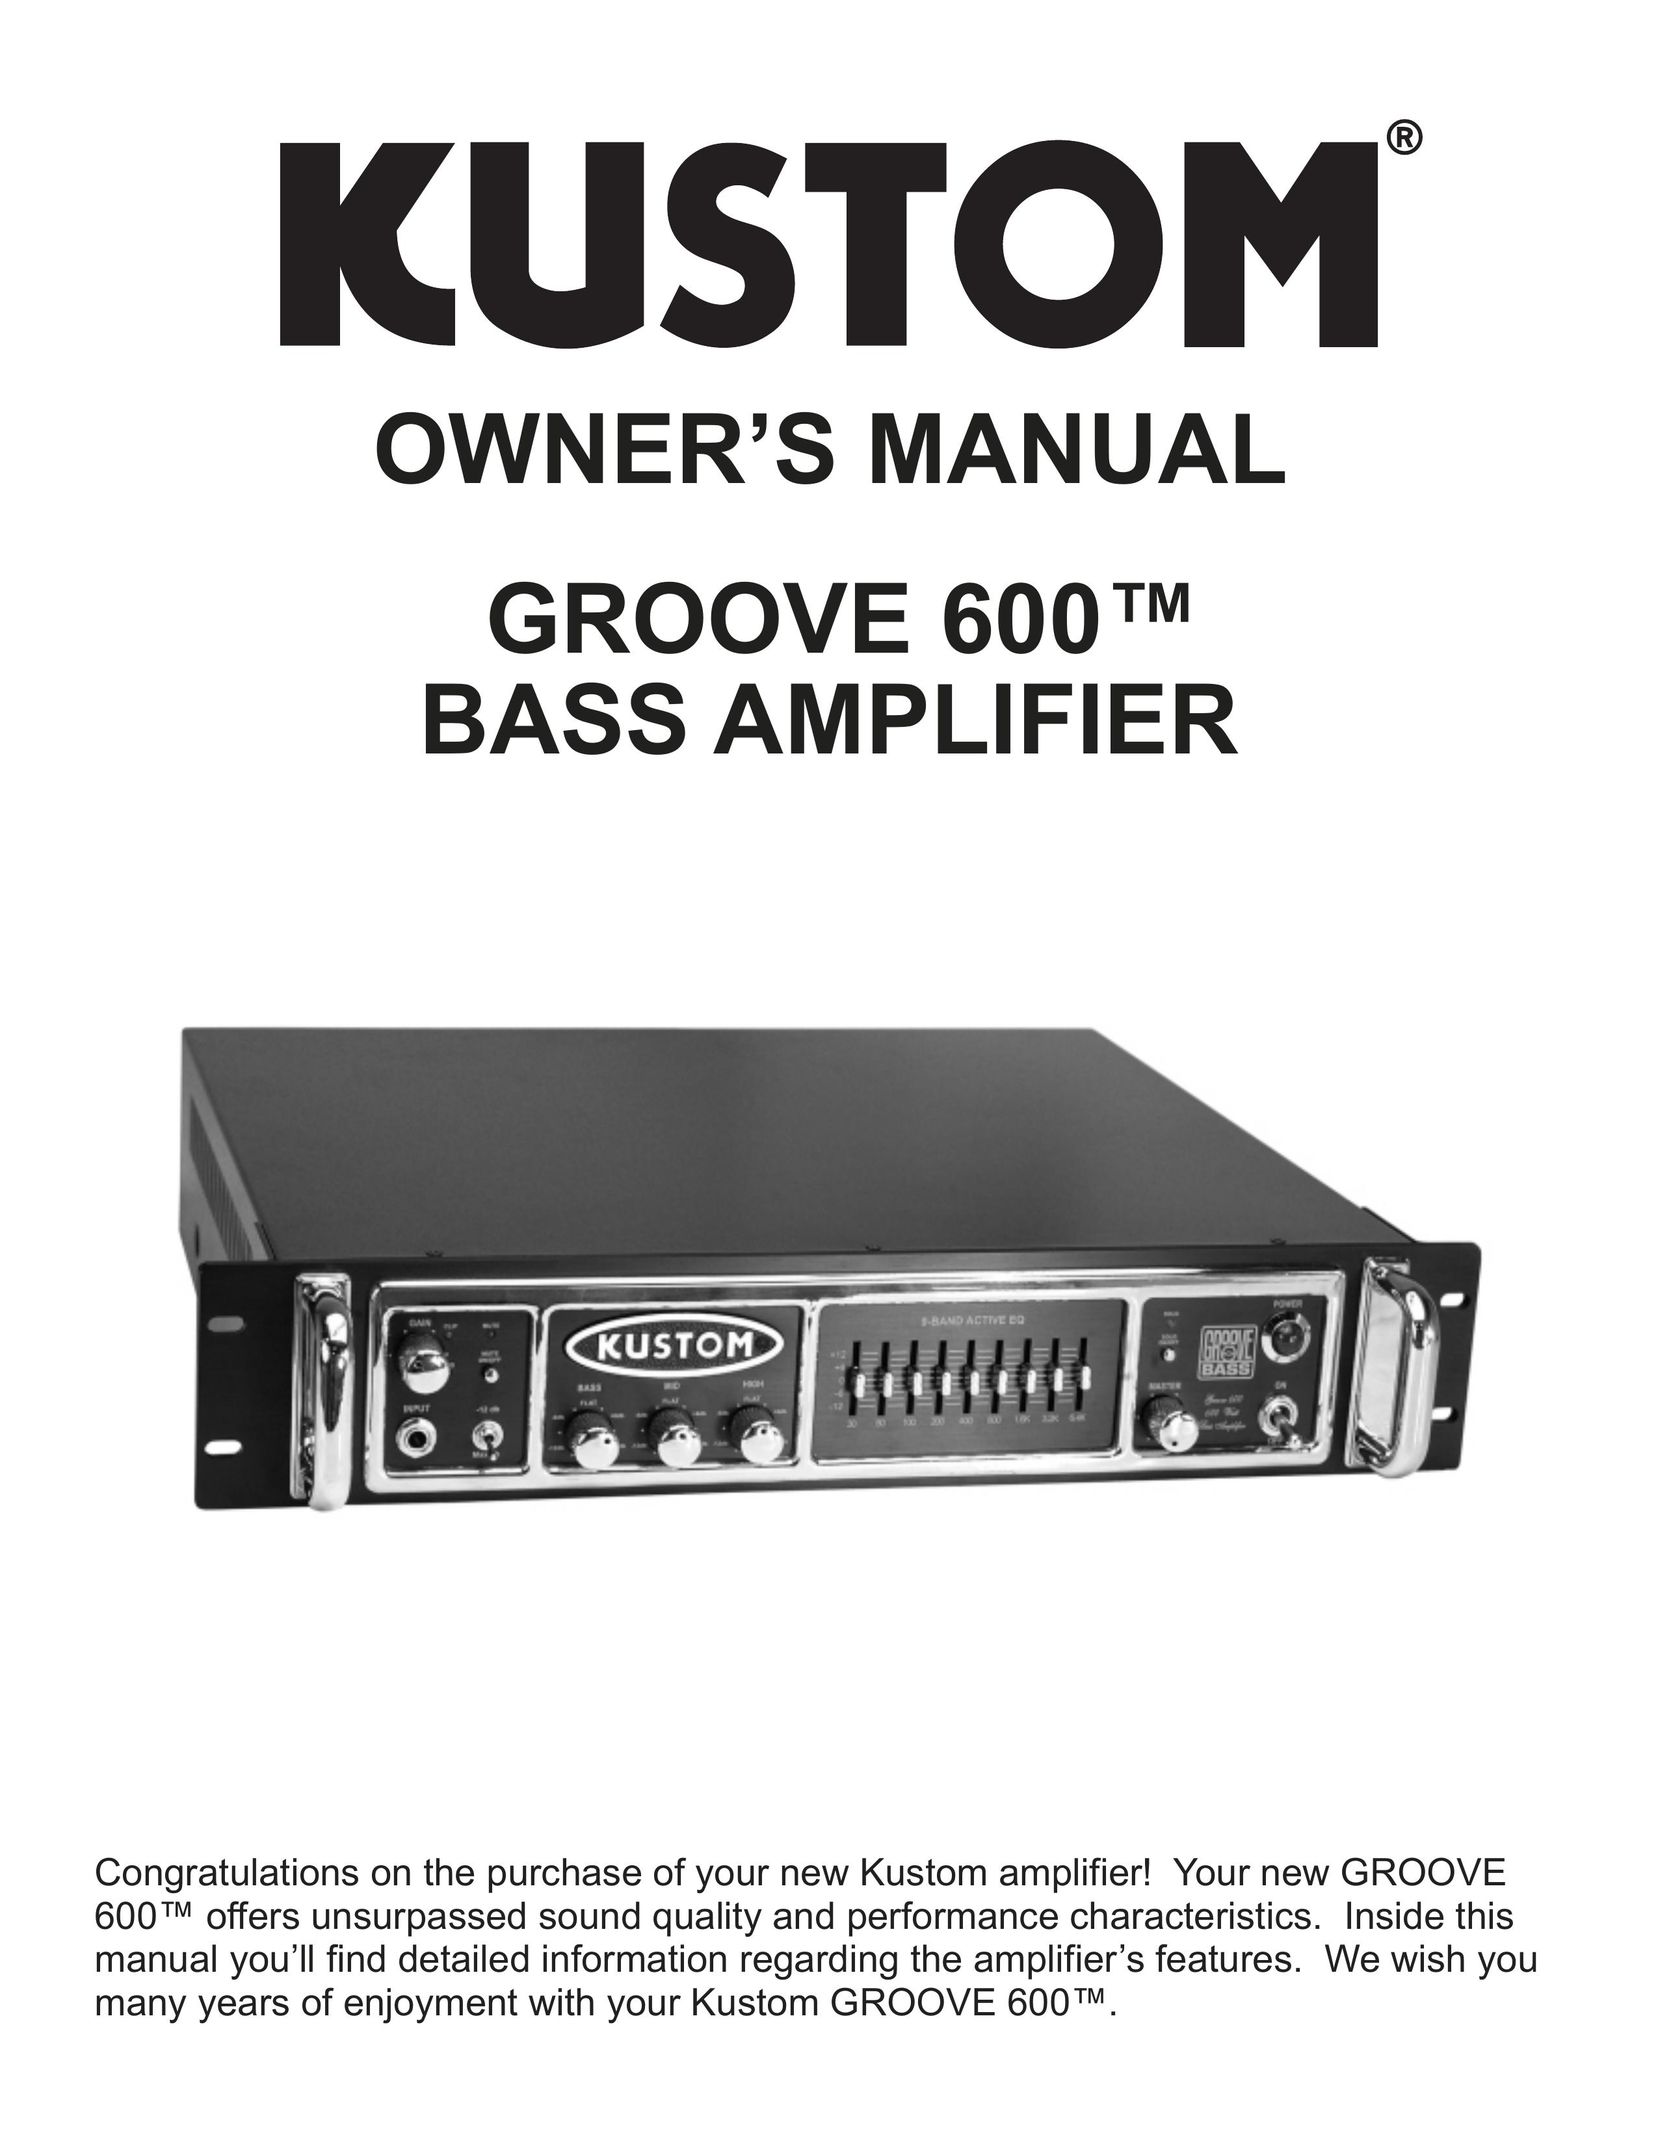 Kustom GROOVE 600TM Stereo Amplifier User Manual